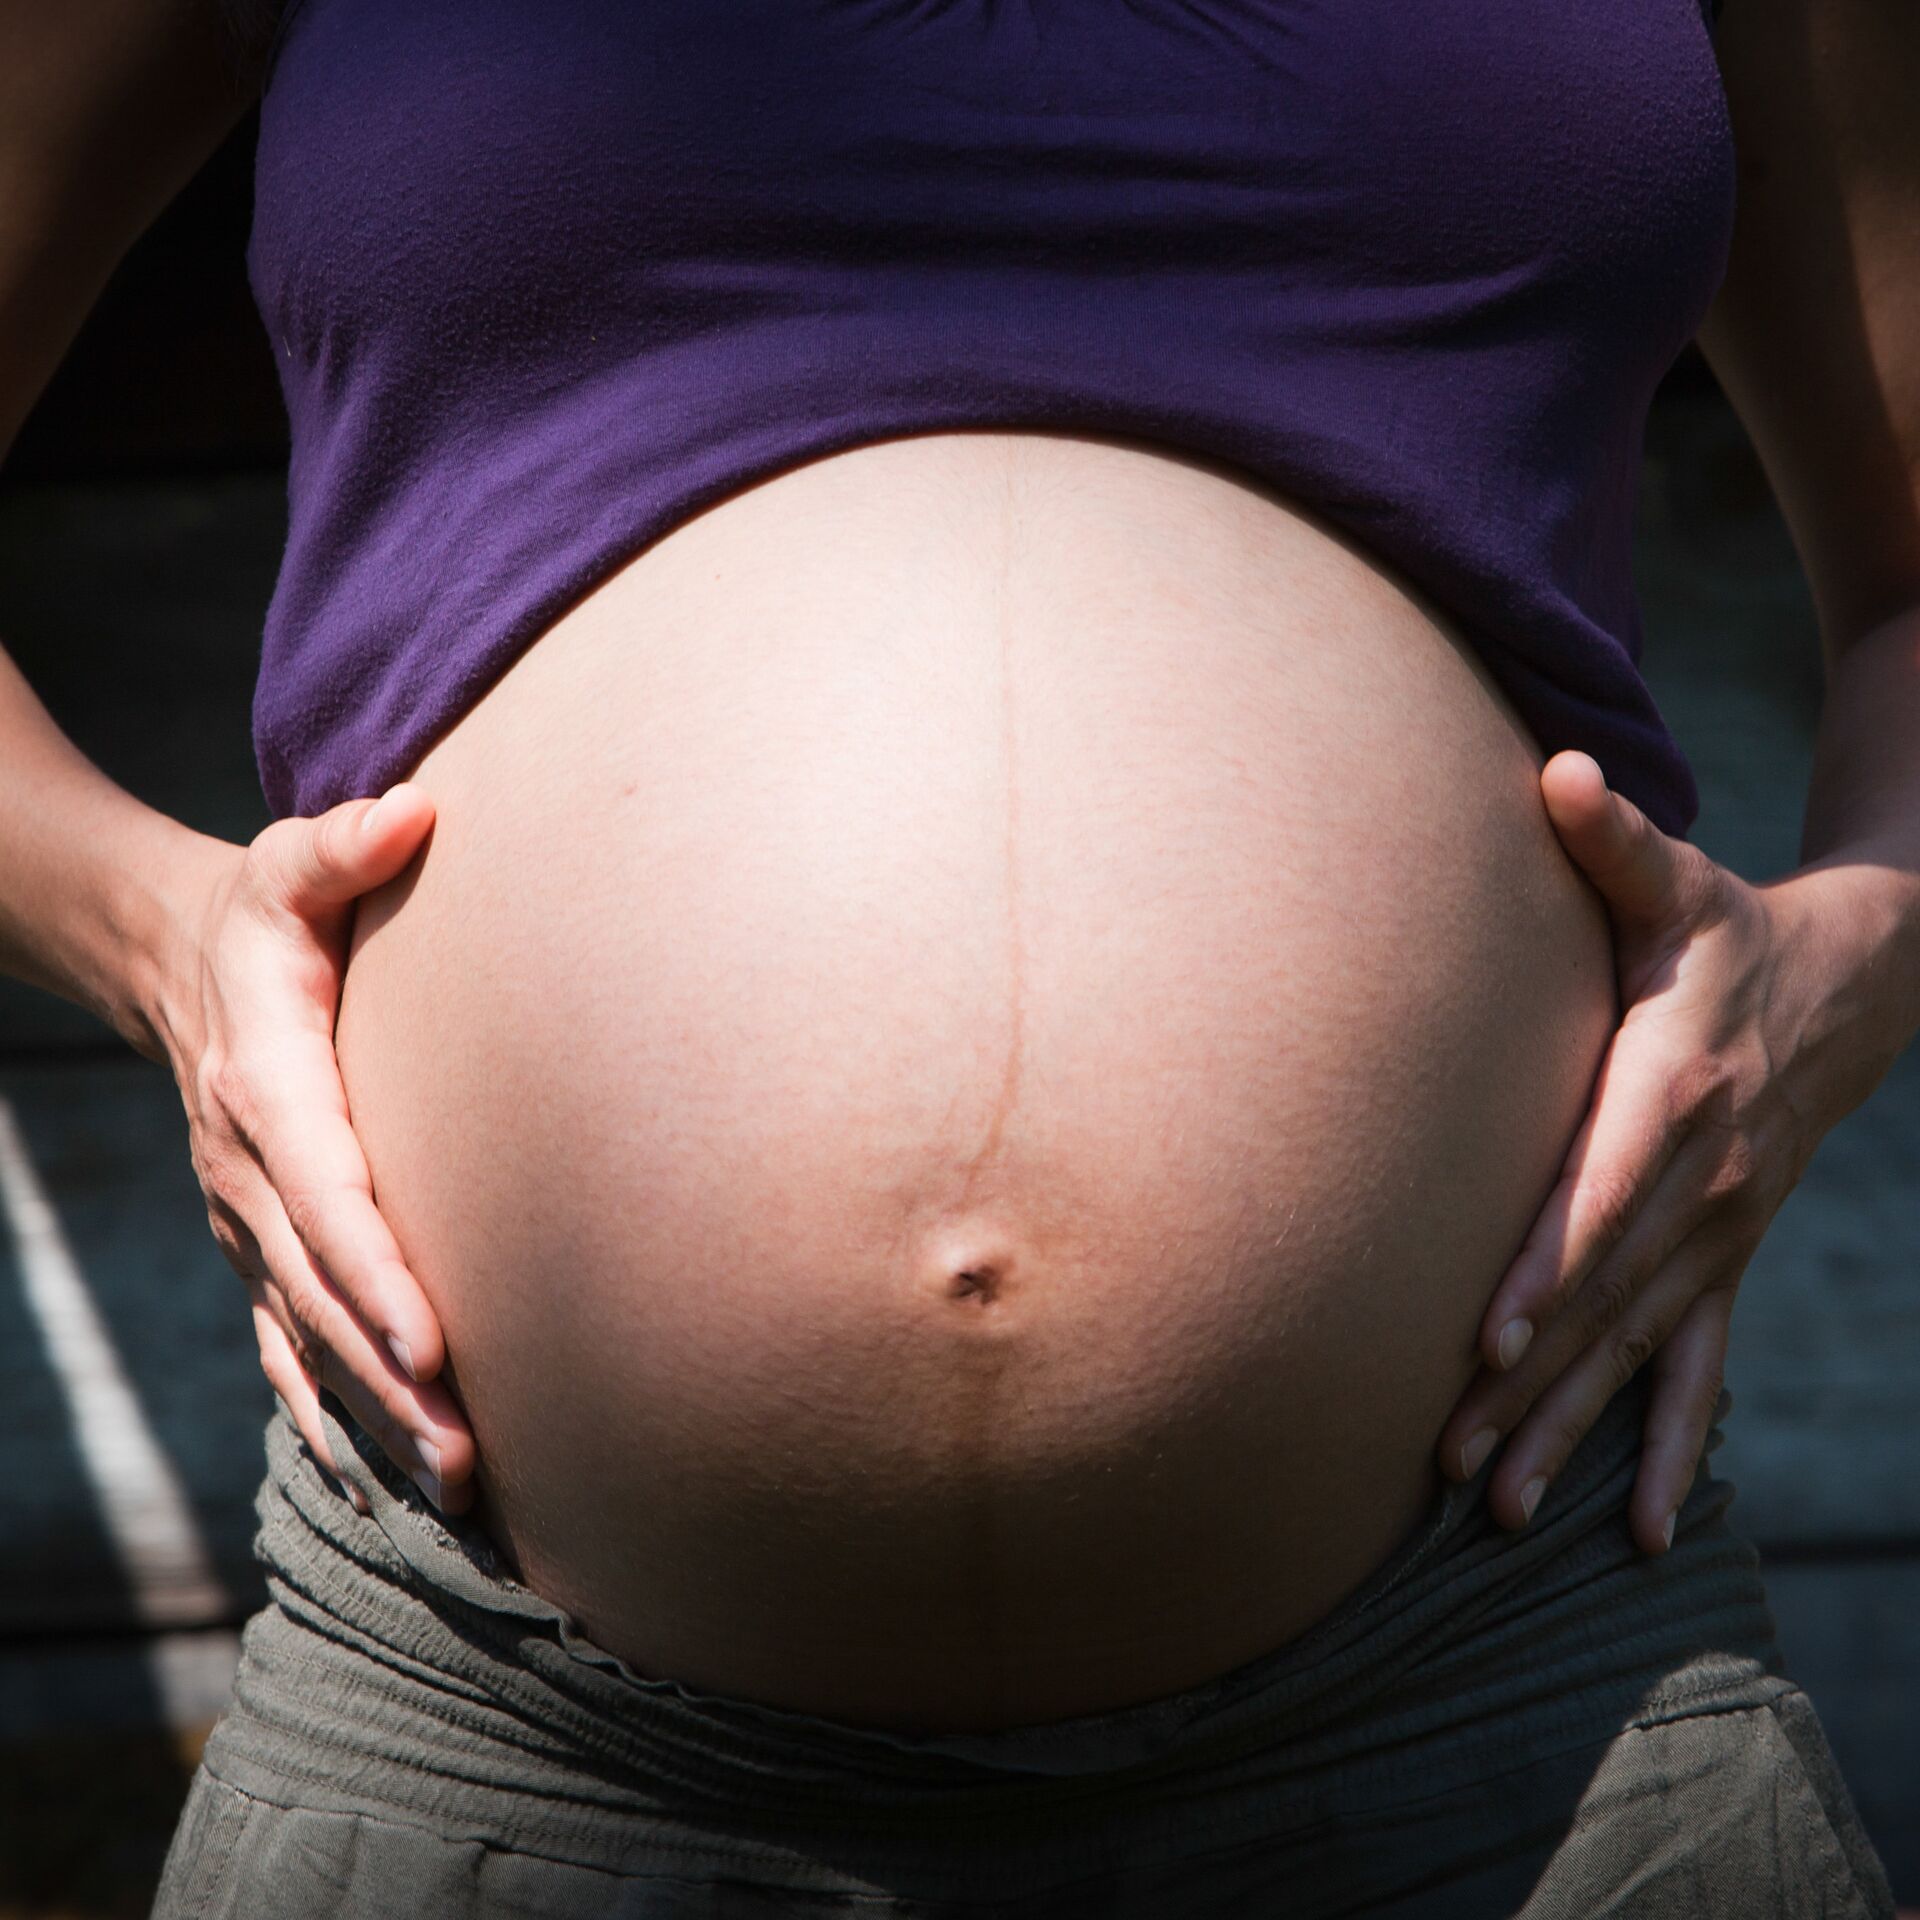 Боли в животе при беременности – когда нужно обращаться к врачу? | Частная клиника в Челябинске